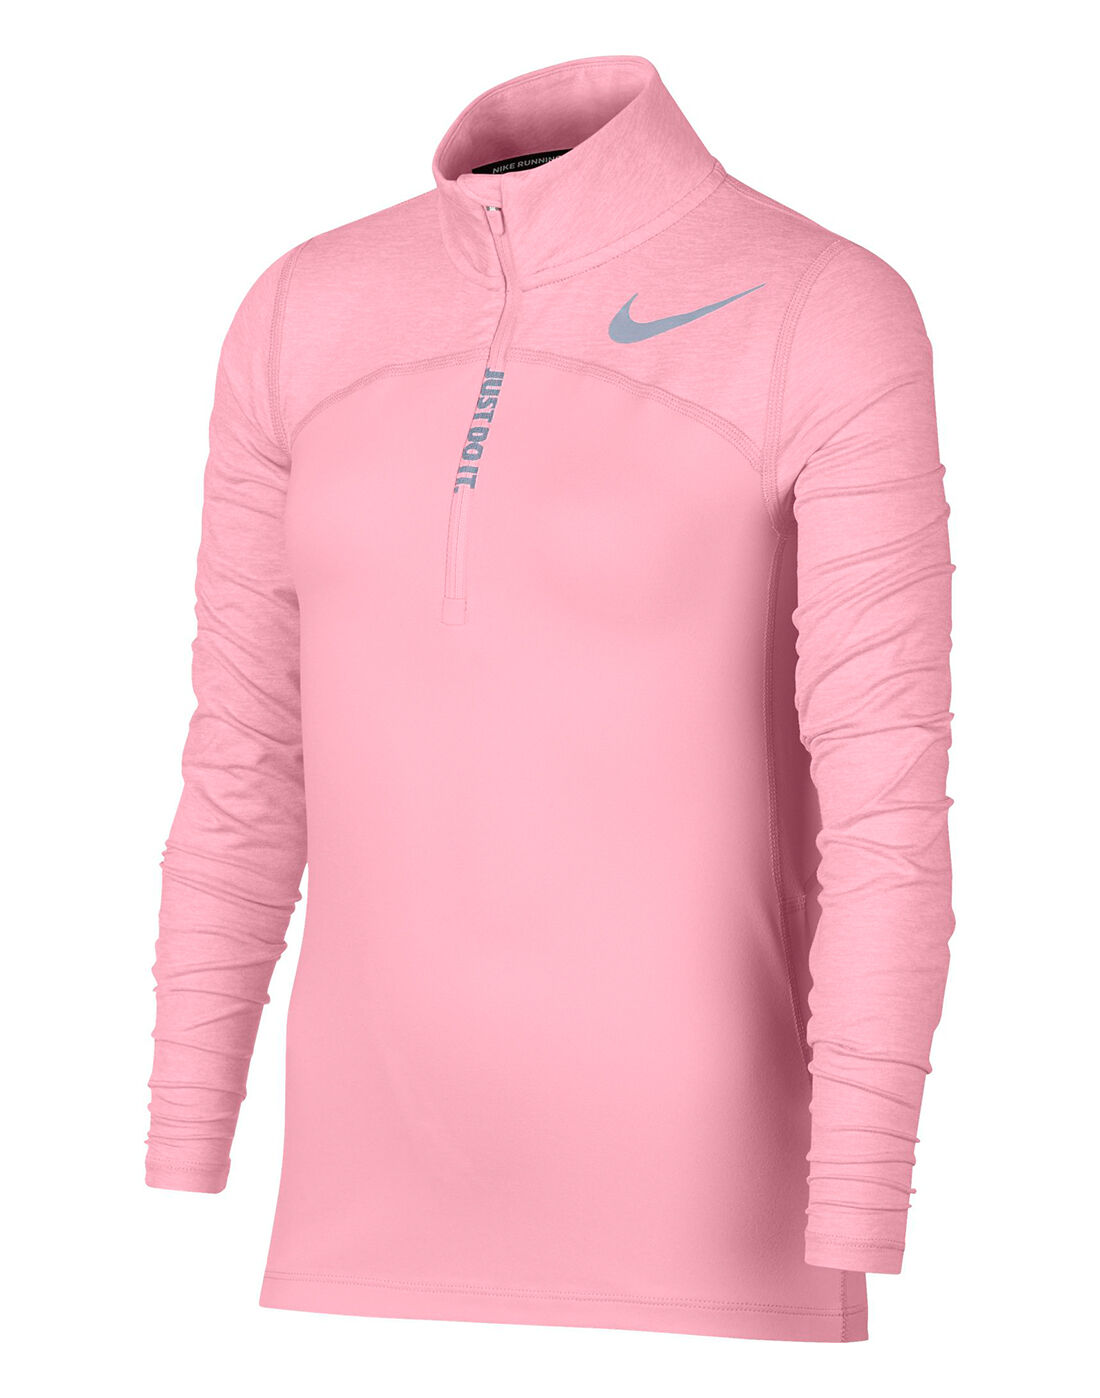 pink half zip running top